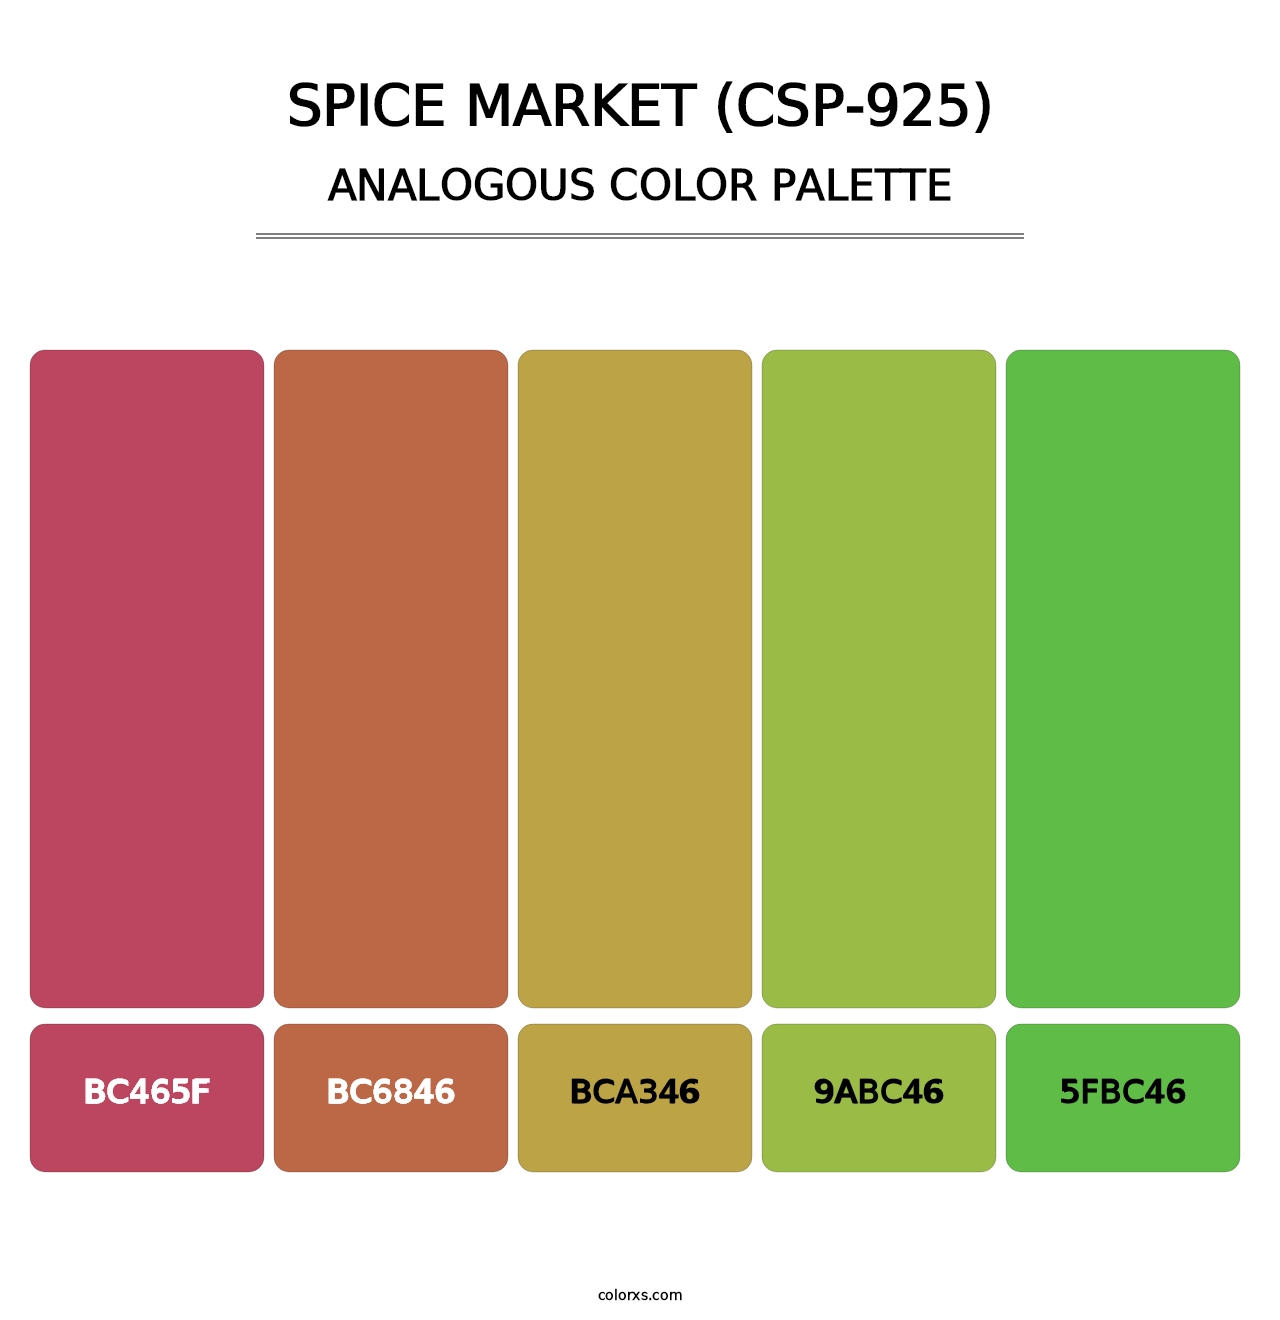 Spice Market (CSP-925) - Analogous Color Palette